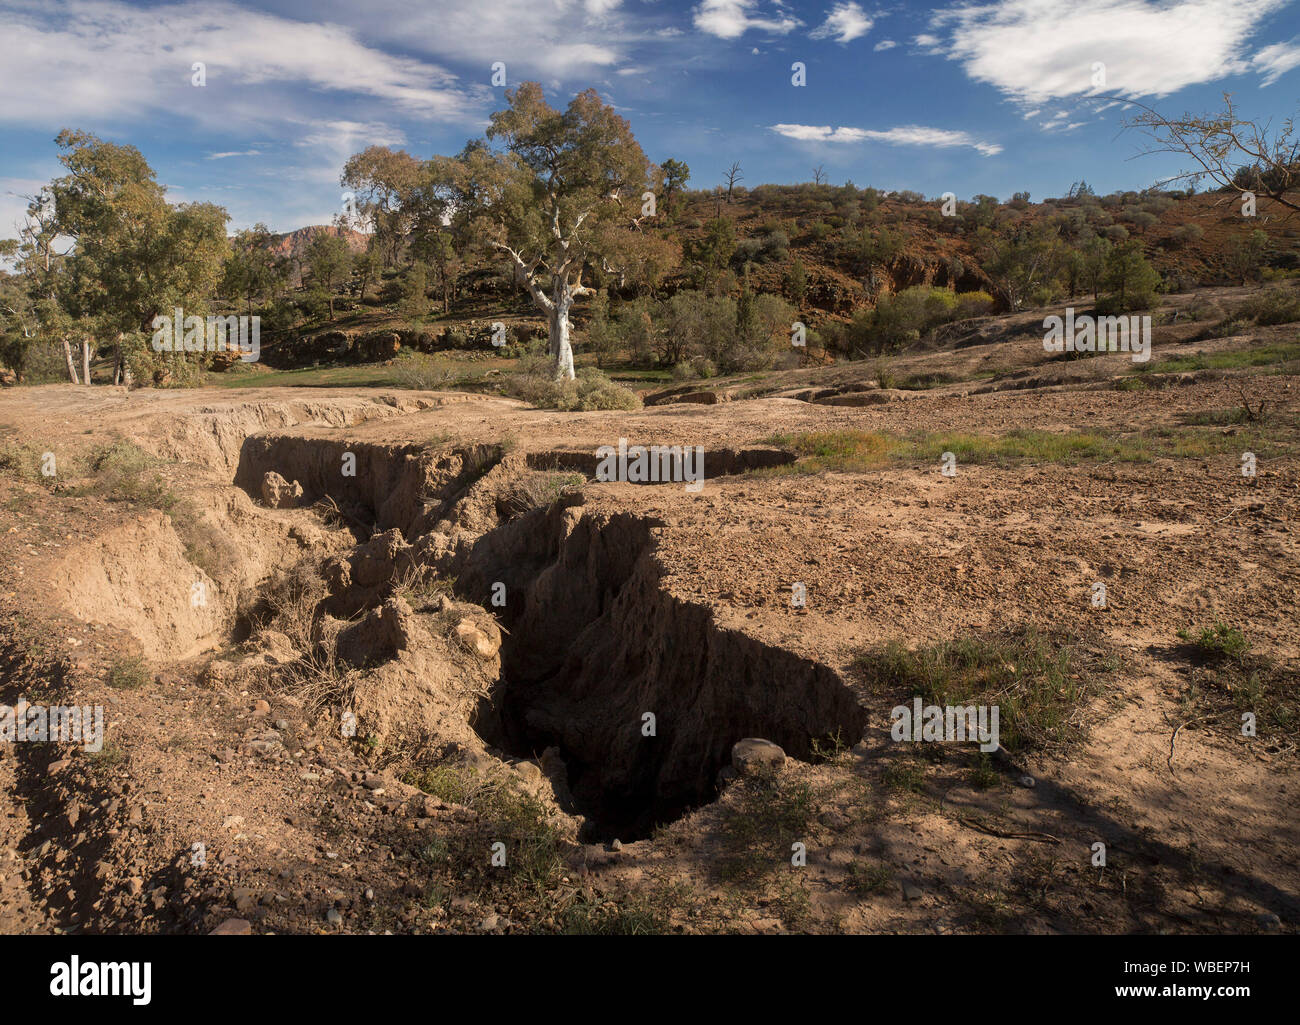 Paysage avec profondeur et fissures béantes sur le sol au pied de collines de faible altitude en raison de l'érosion par l'eau, le parc national de Flinders en Australie Banque D'Images